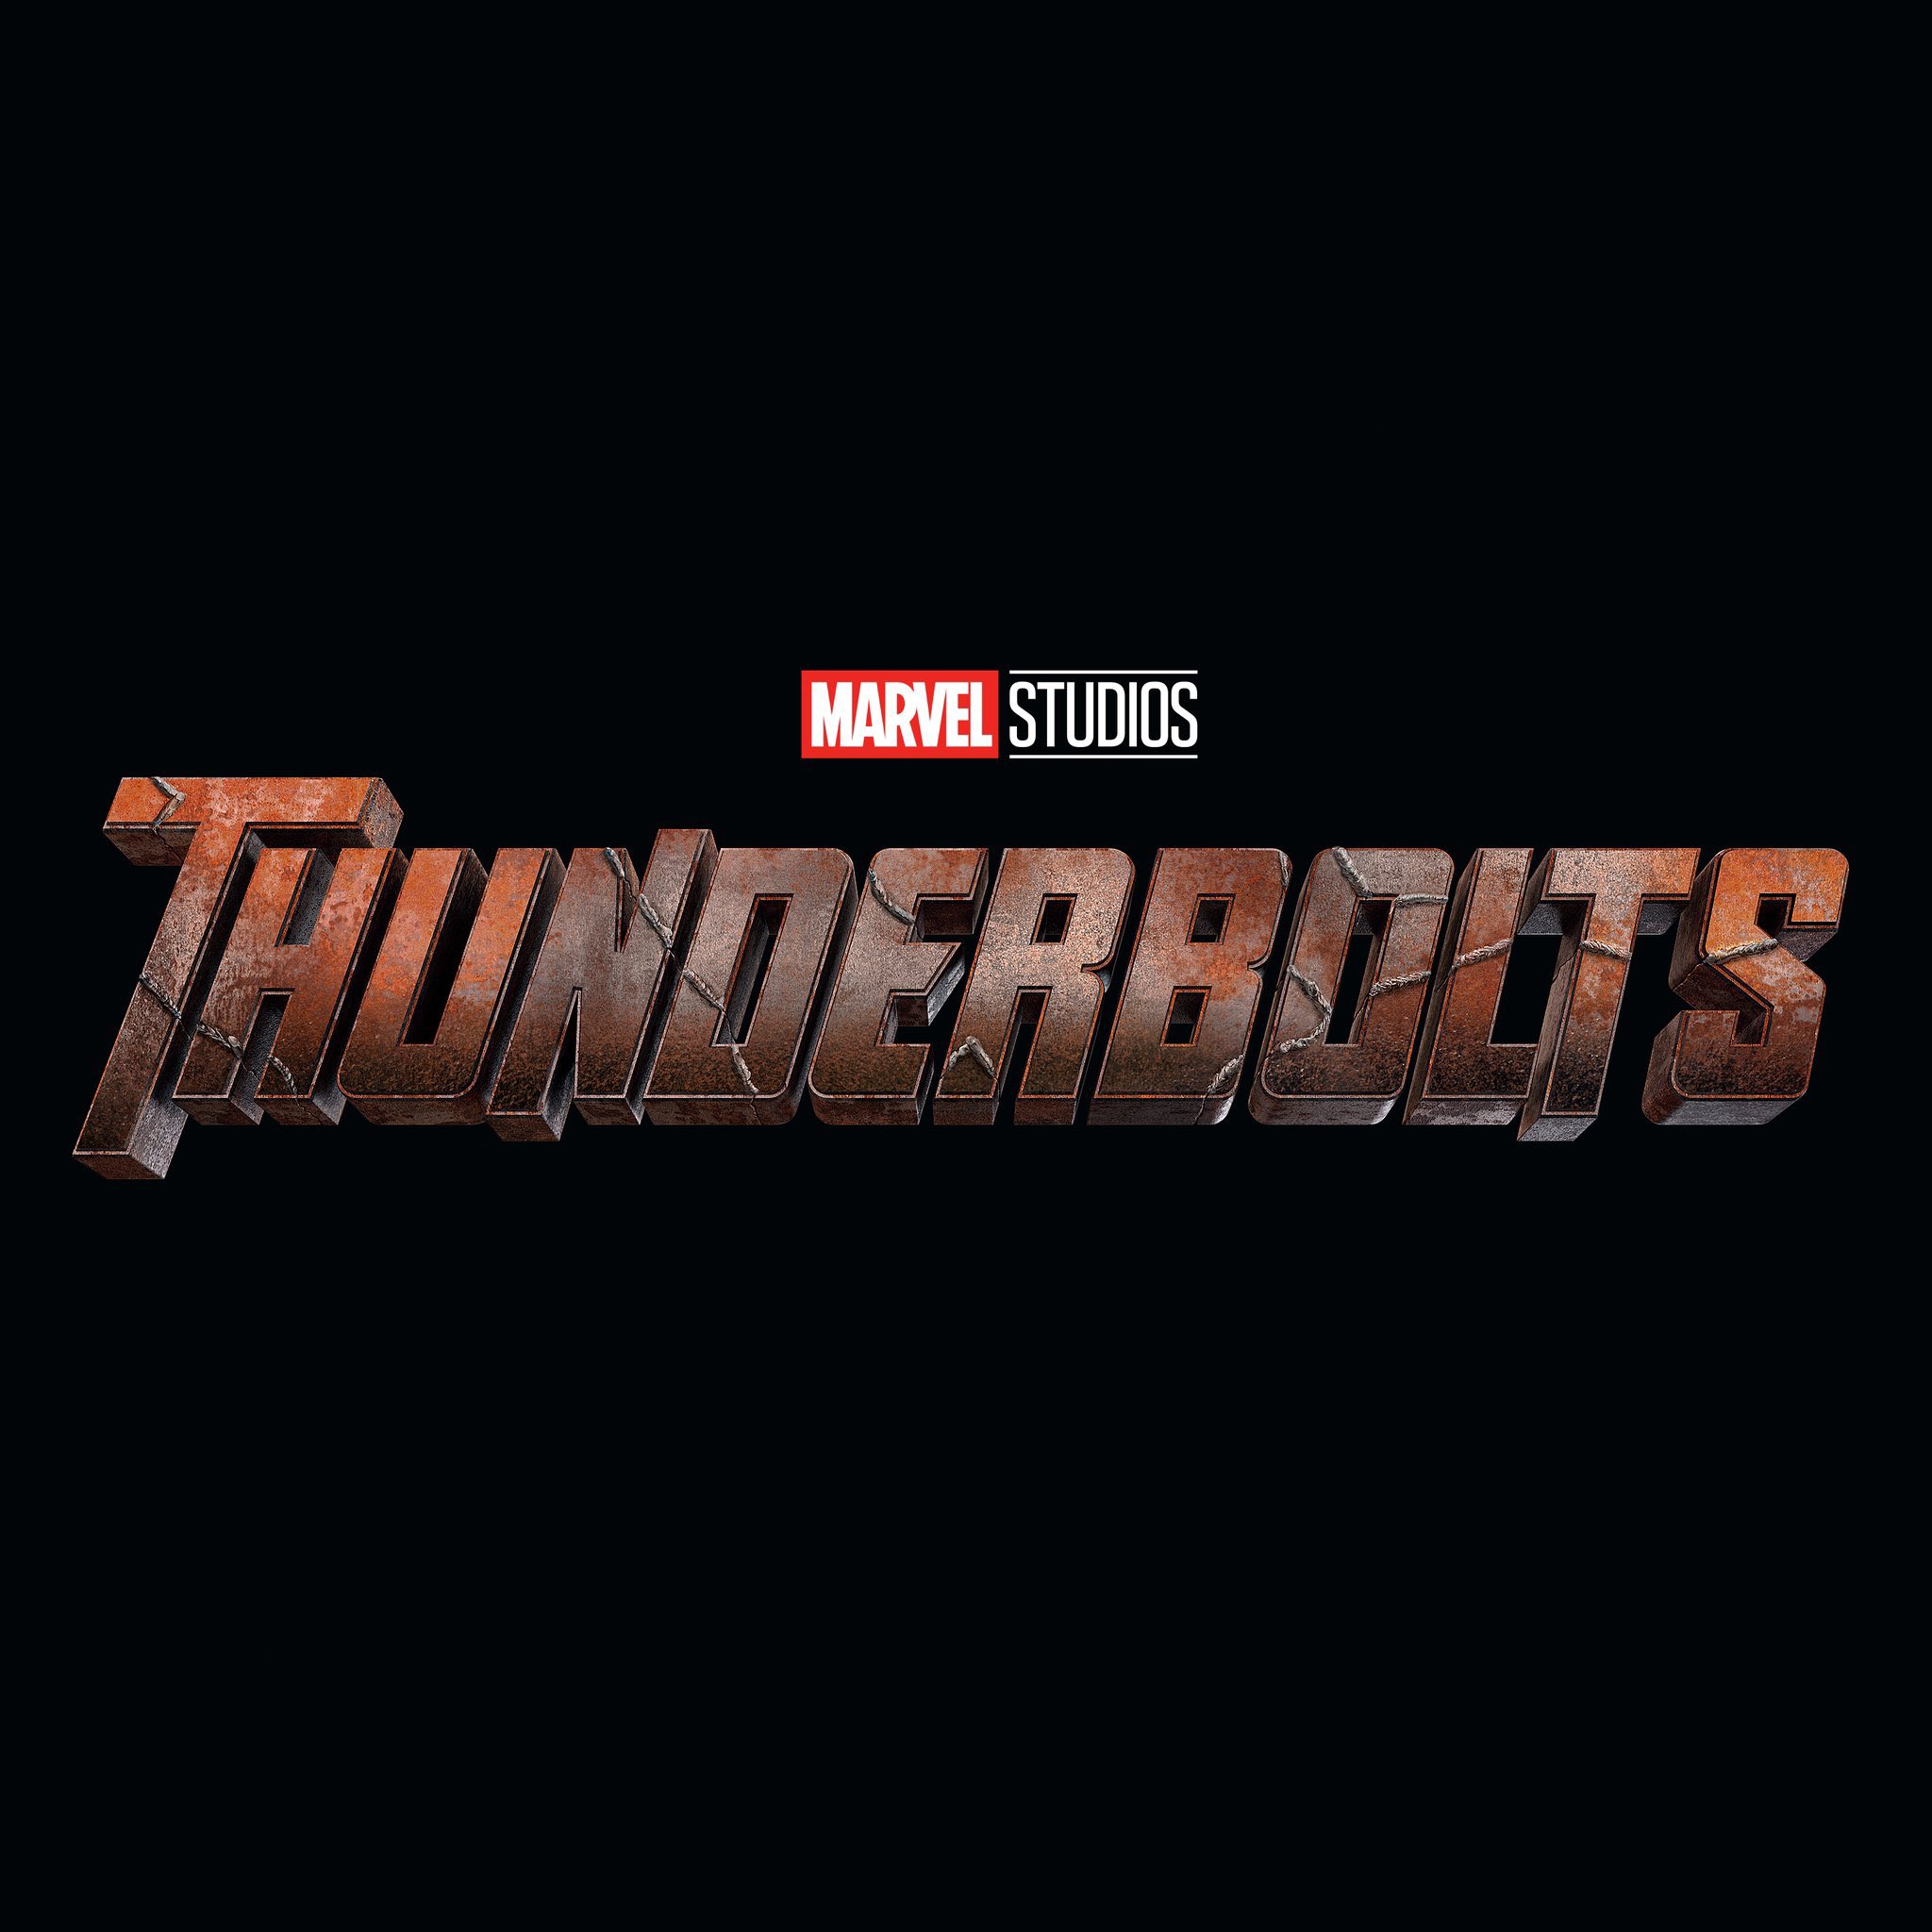 Elenco, estreno y trama: Lo que se sabe sobre ‘Thunderbolts’ de Marvel Studios